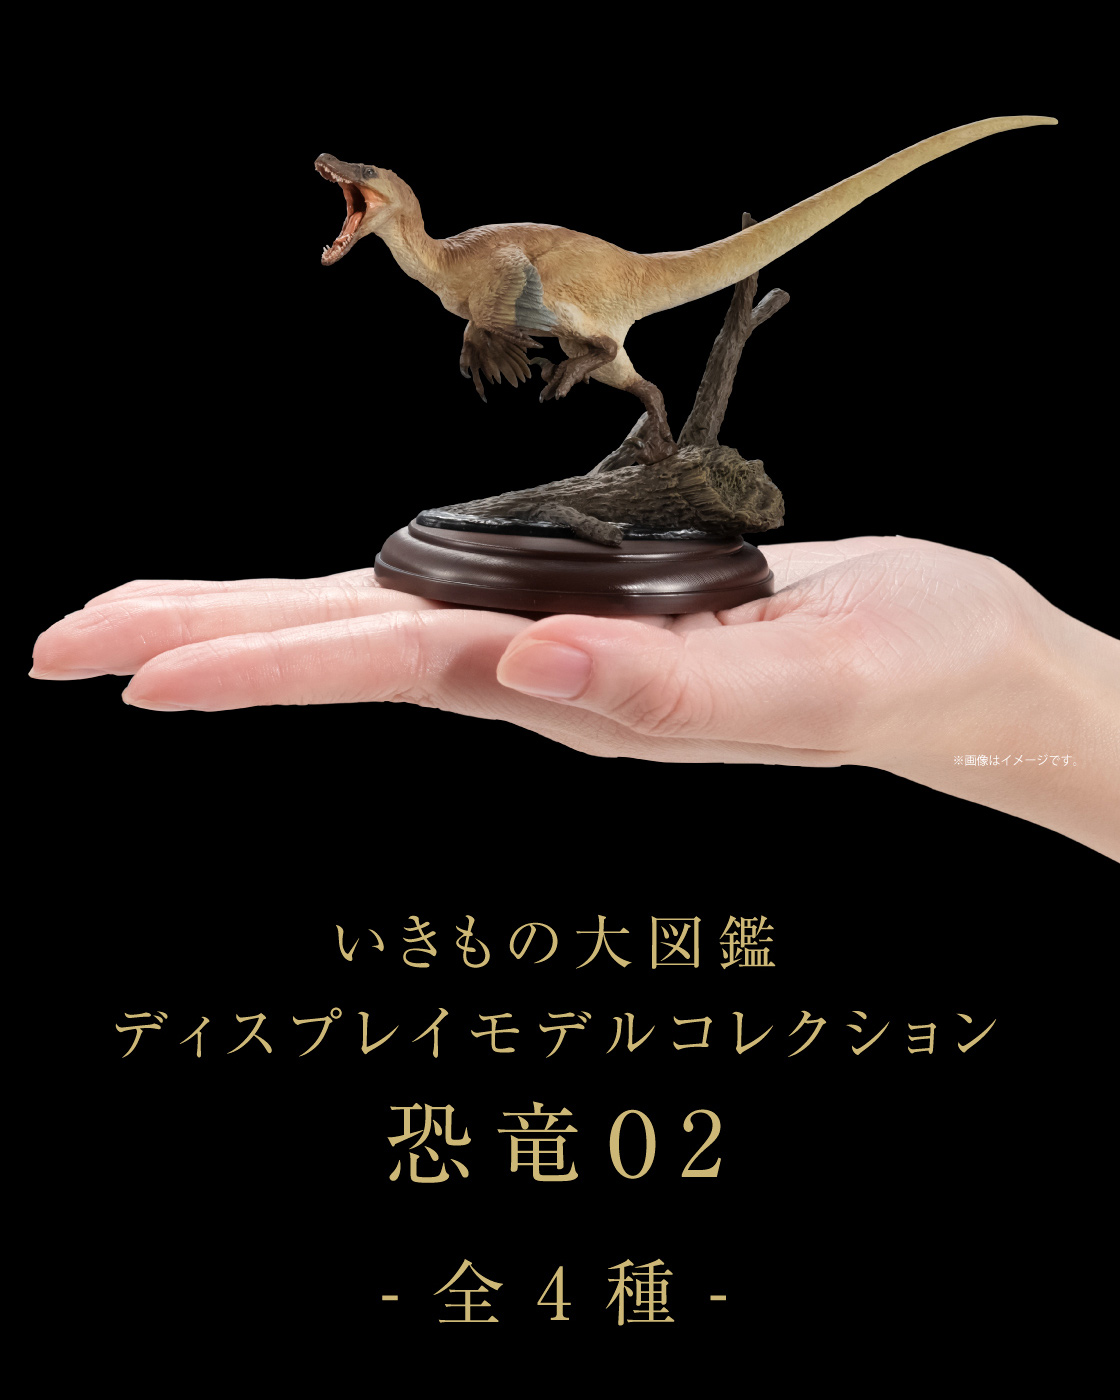 いきもの大図鑑ディスプレイモデルコレクション 恐竜02 -全4種-